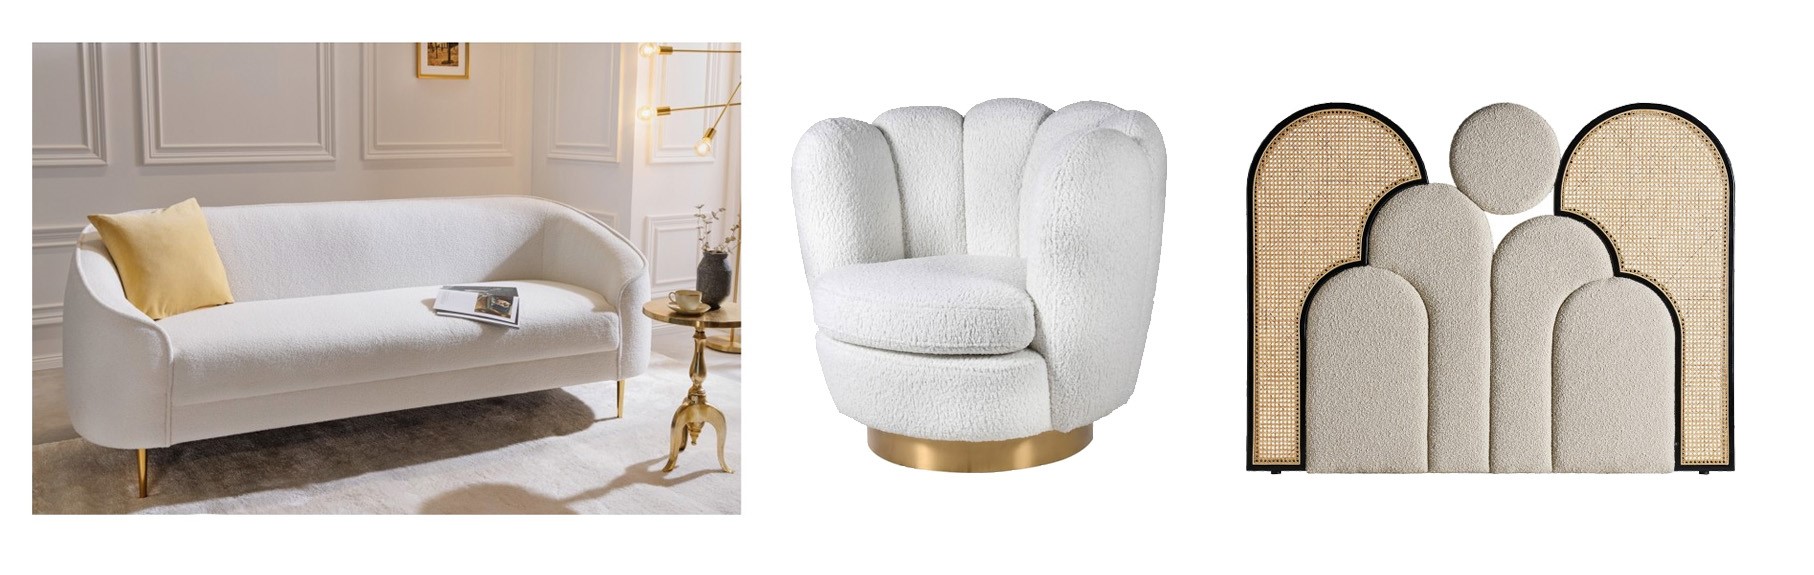 Art deco dizajnová sedačka Sintra s boucle poťahom bielej farby, Art deco buklé kreslo Seashell bielej farby so zlatou kovovou podstavou, Glamour dizajnové čelo postele Aurelia s boucle čalúnením a ratanovým výpletom 